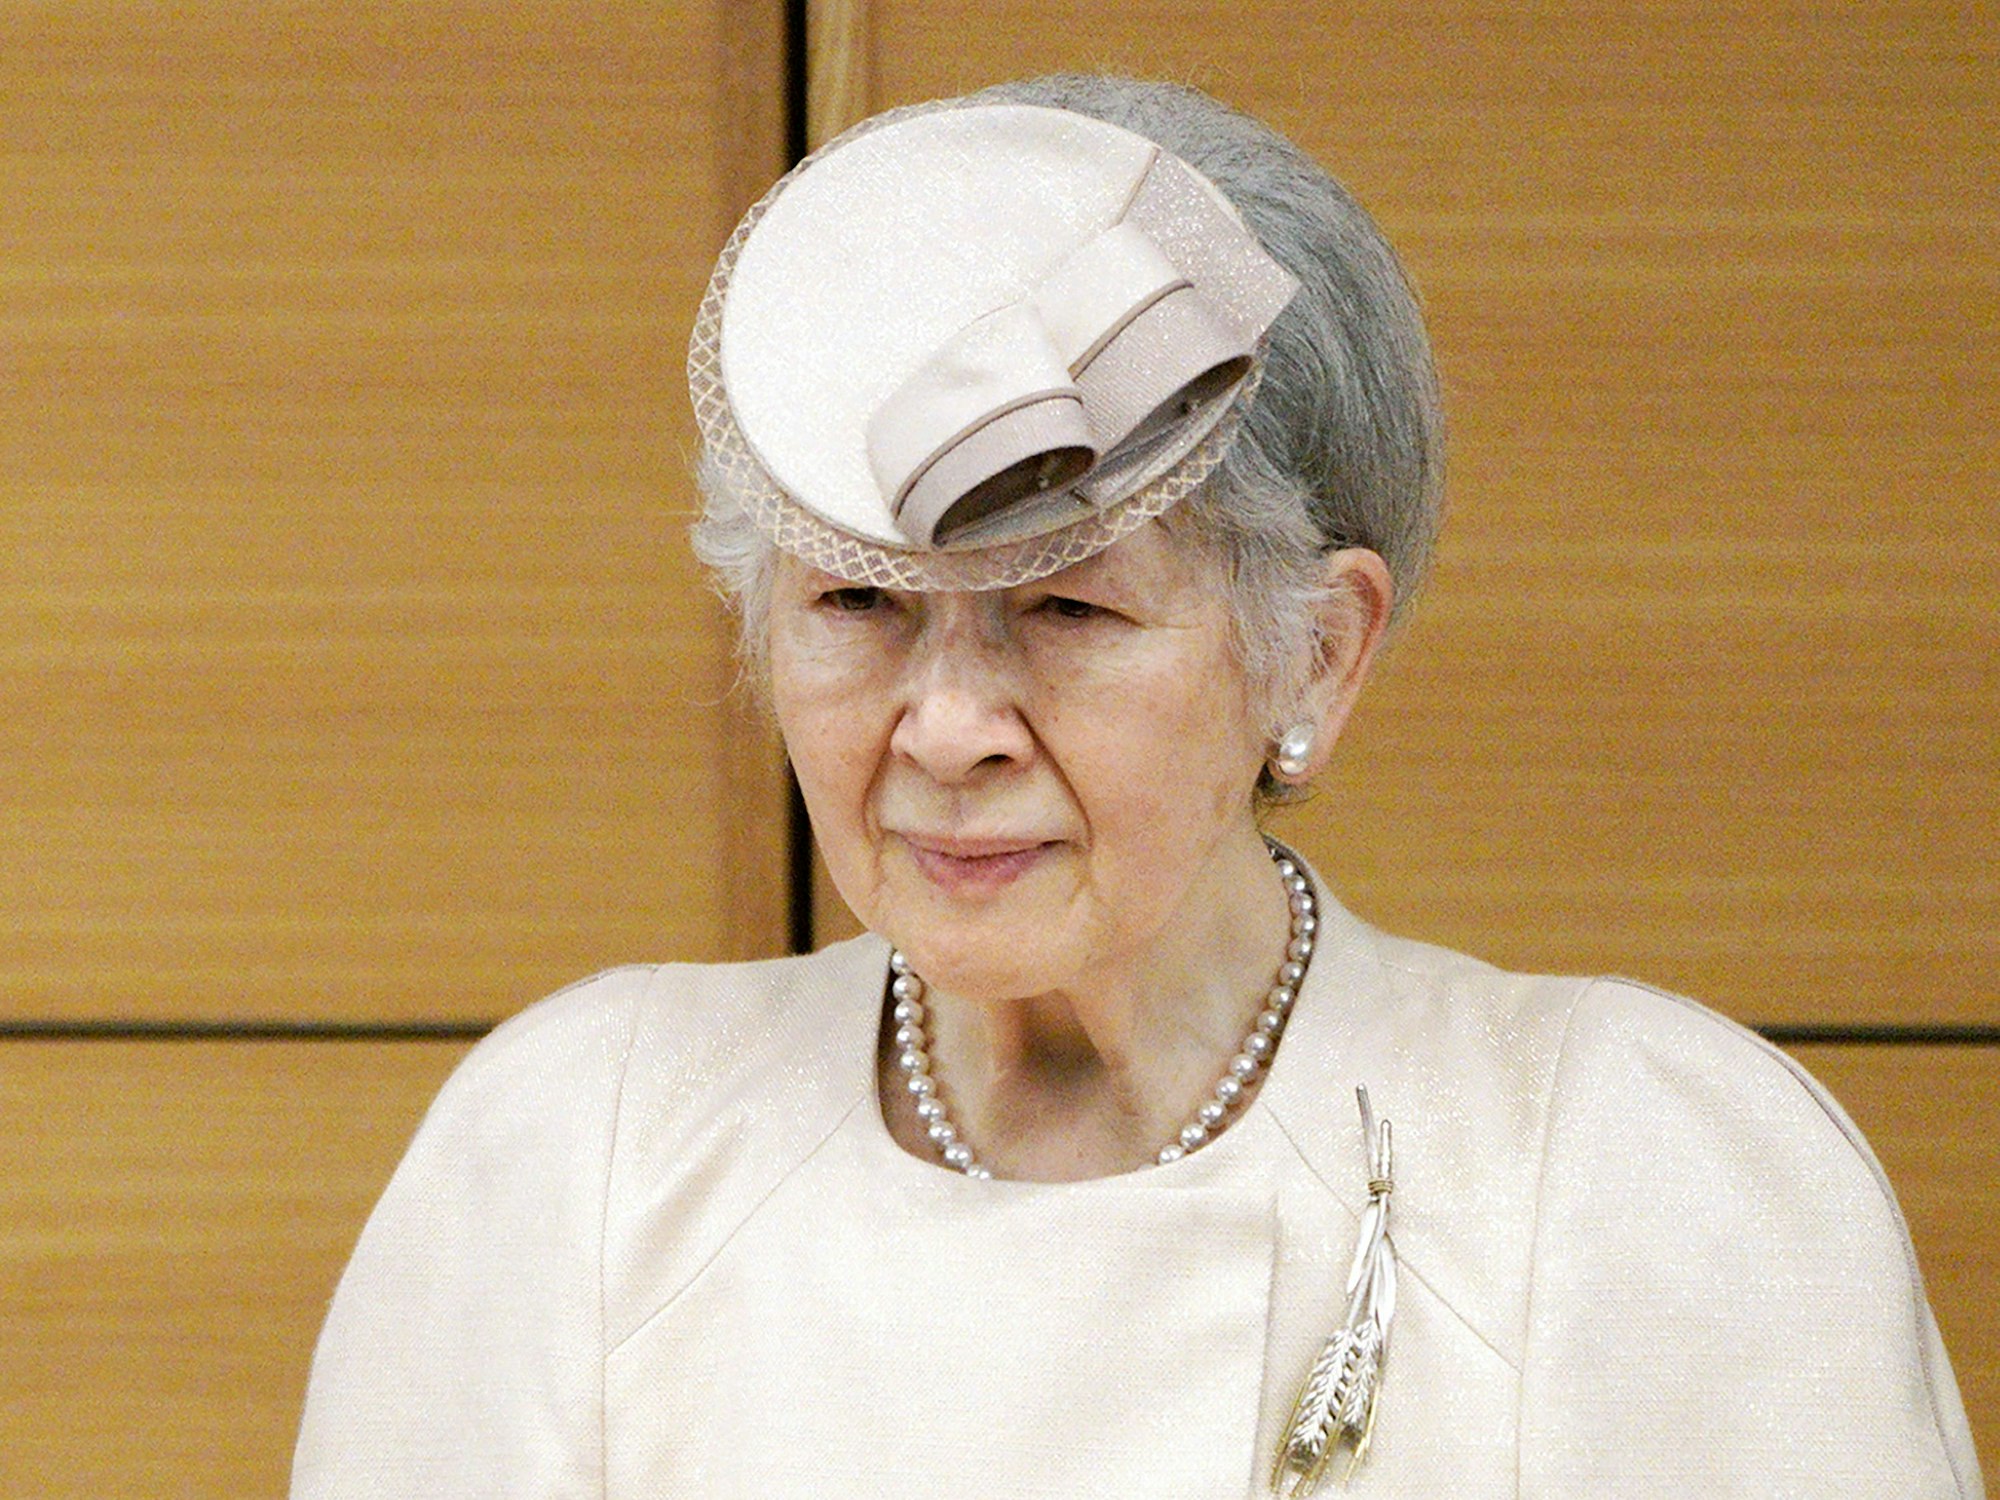 Die frühere japanische Kaiserin Michiko nimmt an der Verleihung des Midori Academic-Preis teil. Ärzte haben bei der früheren japanischen Kaiserin Michiko Brustkrebs diagnostiziert.